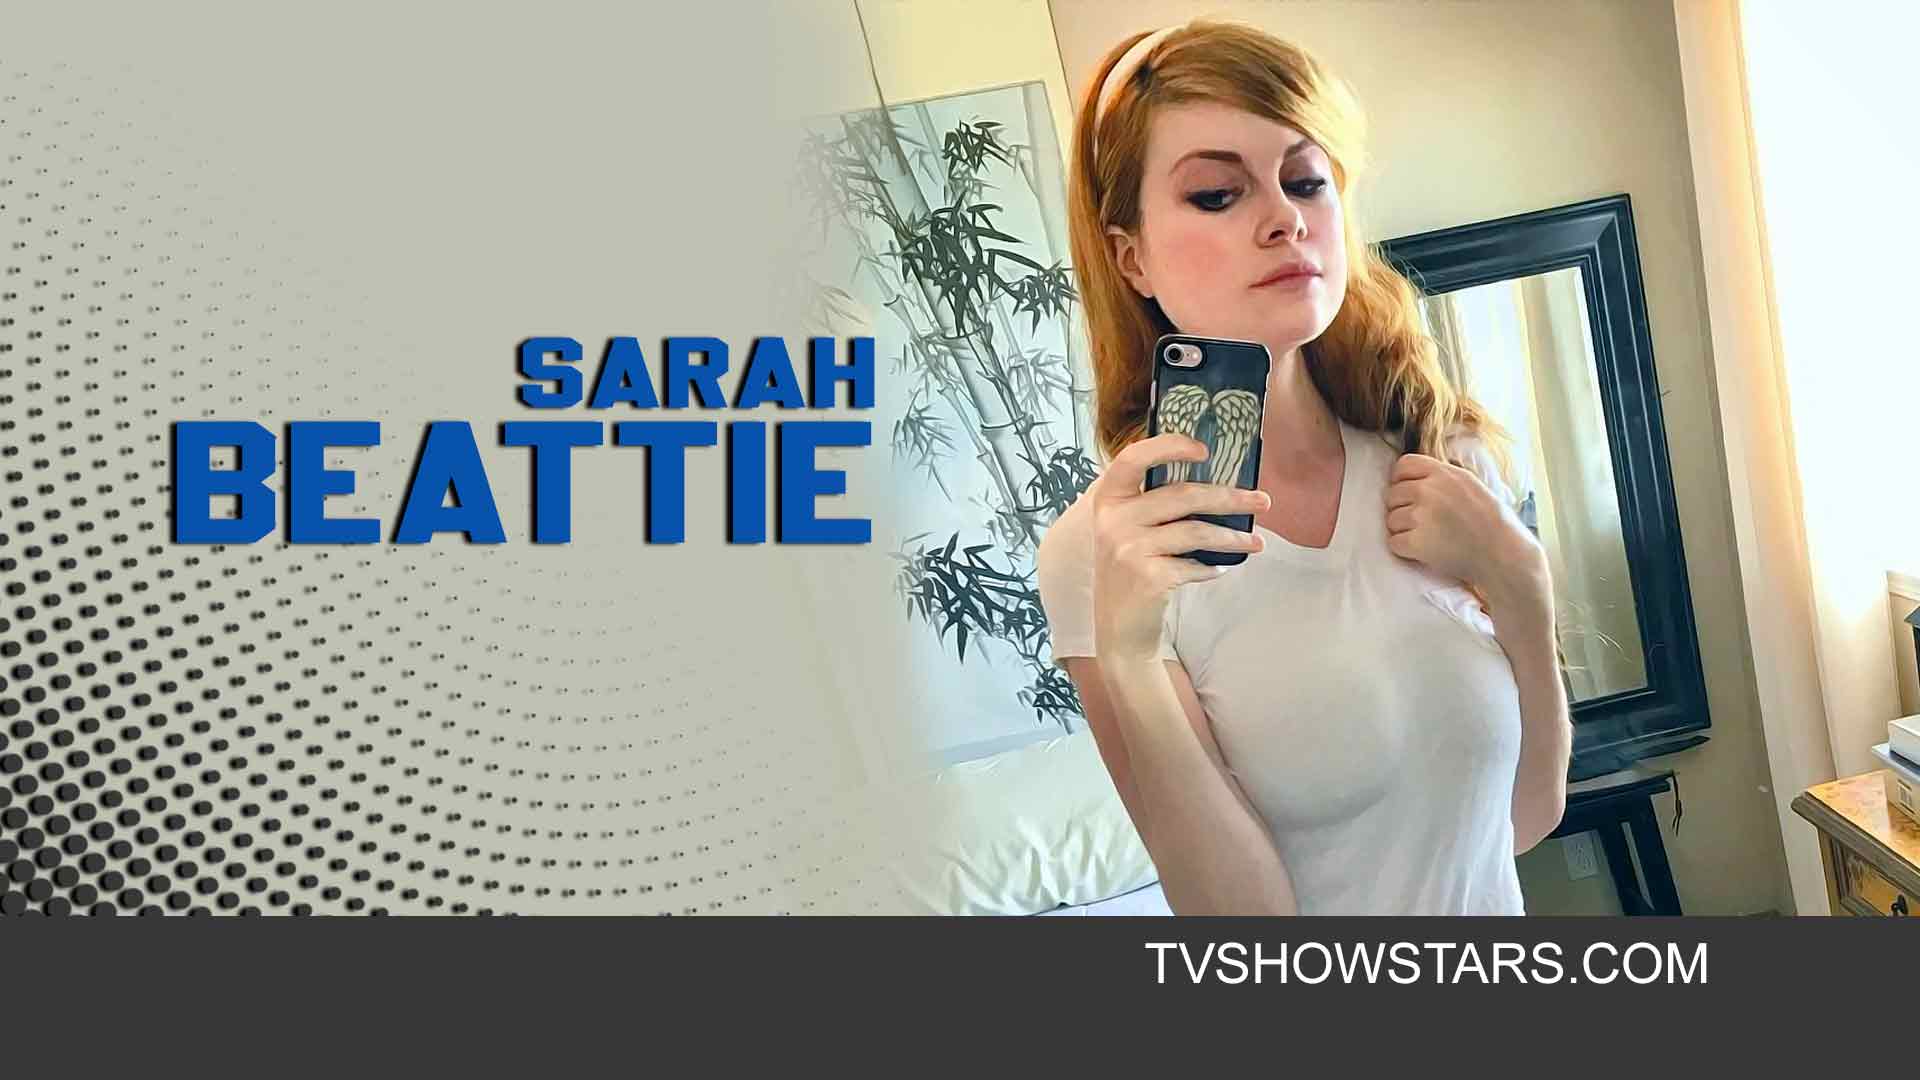 Sarah beattie instagram